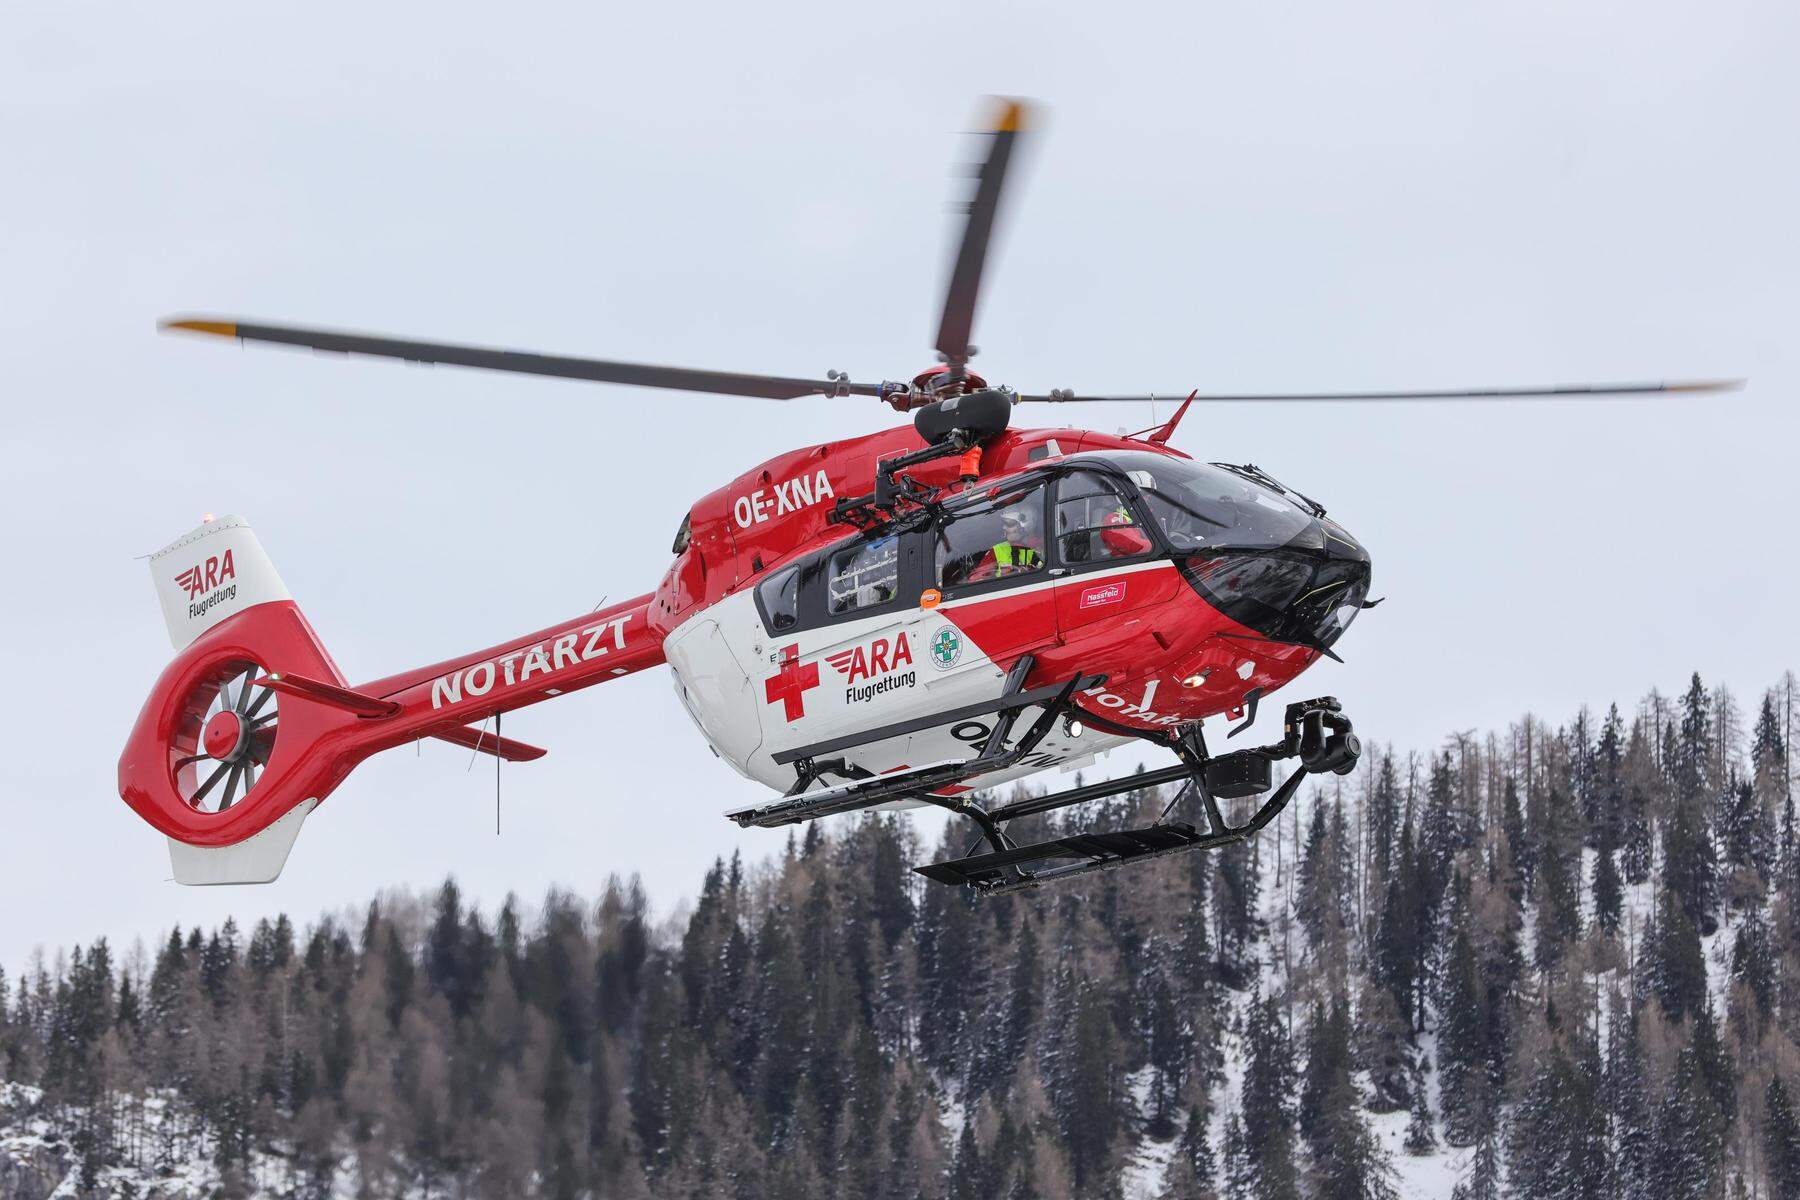 Mitarbeiter der Bergbahnen am Nassfeld schwer verletzt